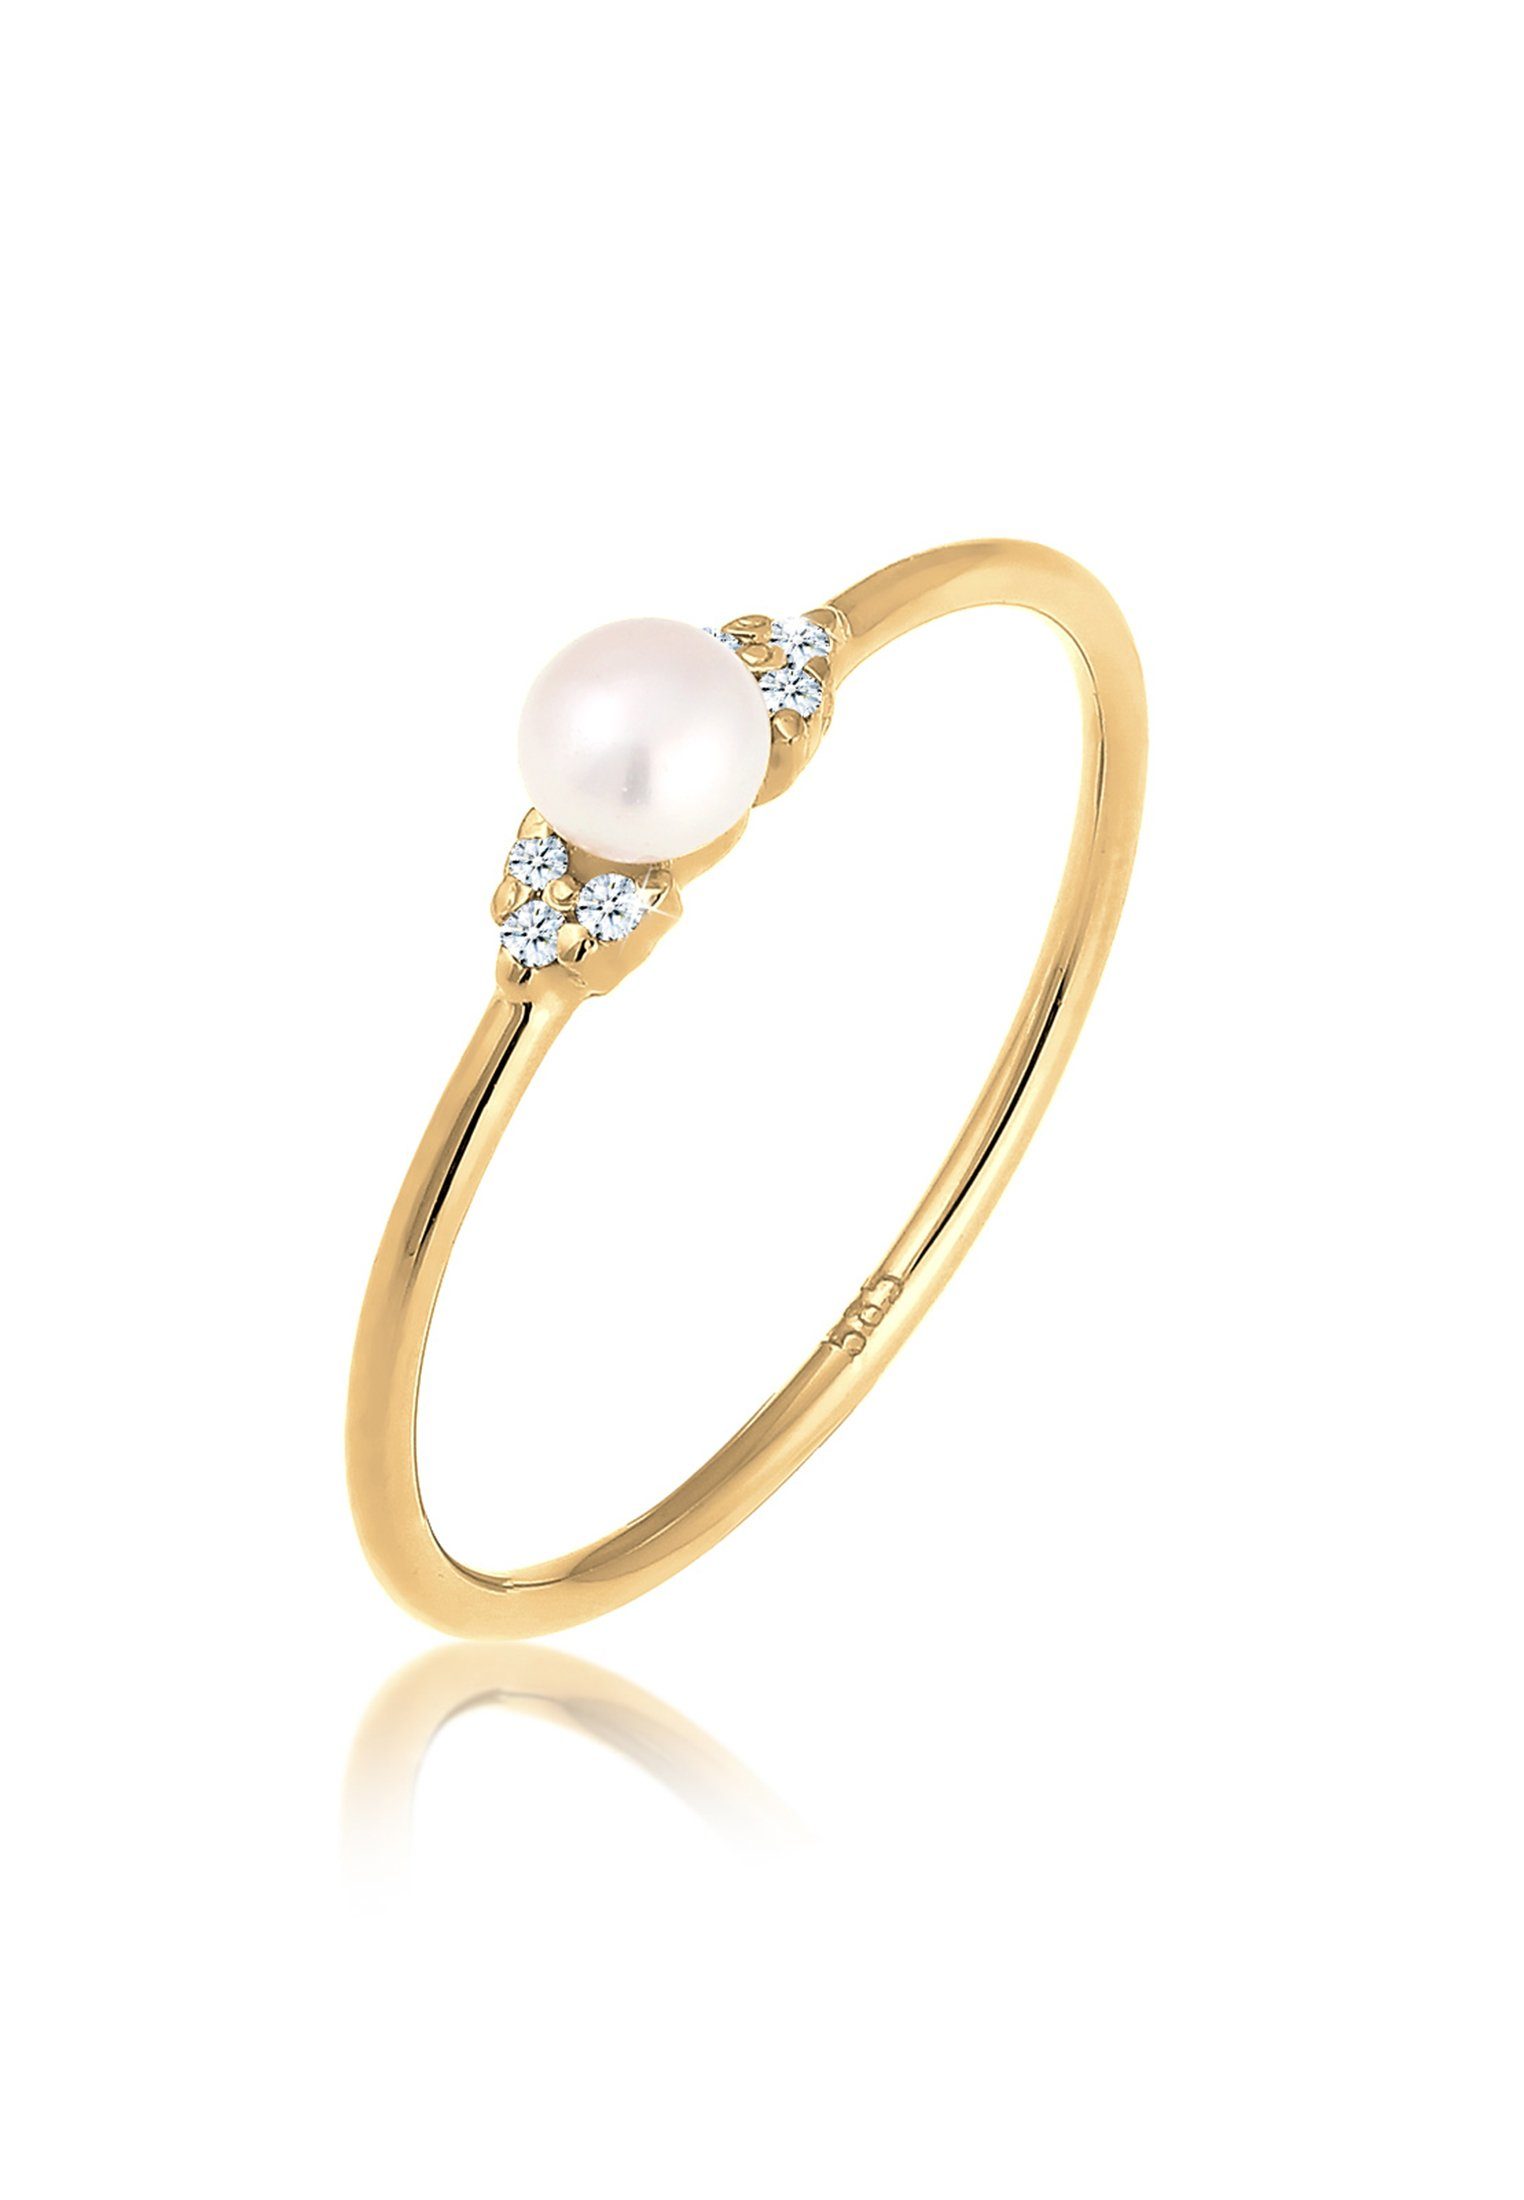 Elli DIAMONDS Verlobungsring Verlobung 585 Gelbgold Perle Diamant (0.03 ct)